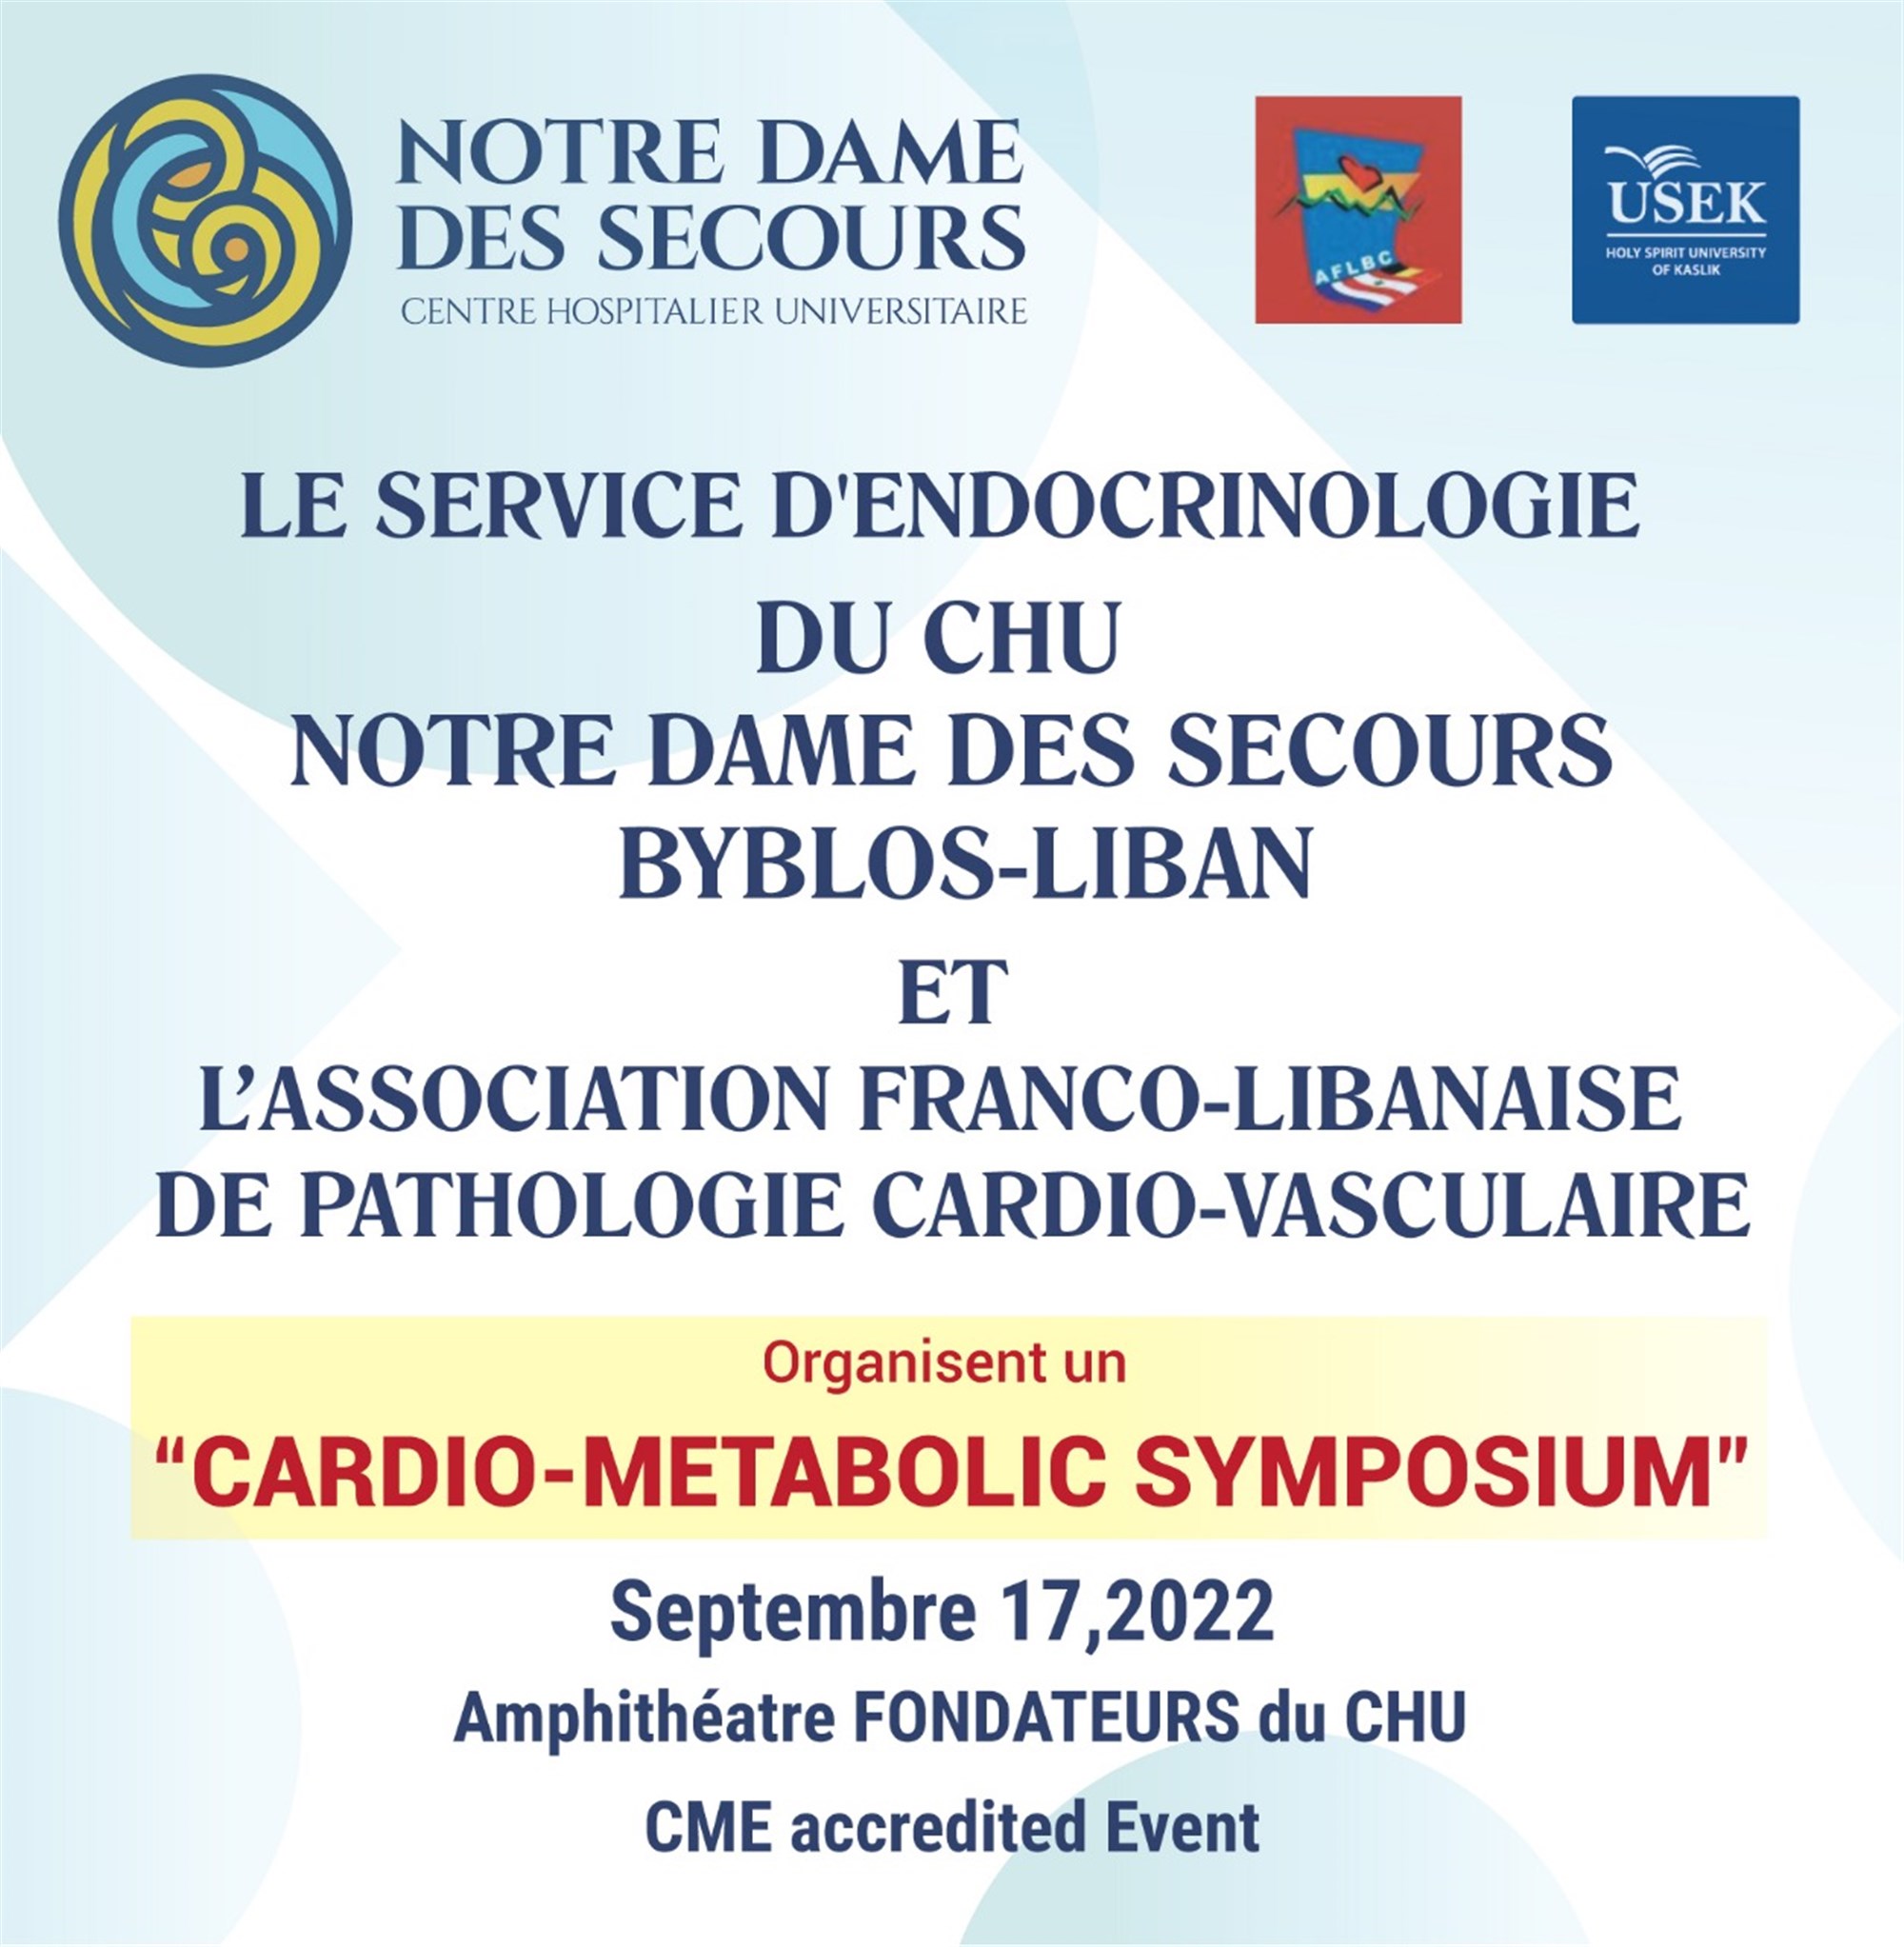 cardio-metabolic symposium